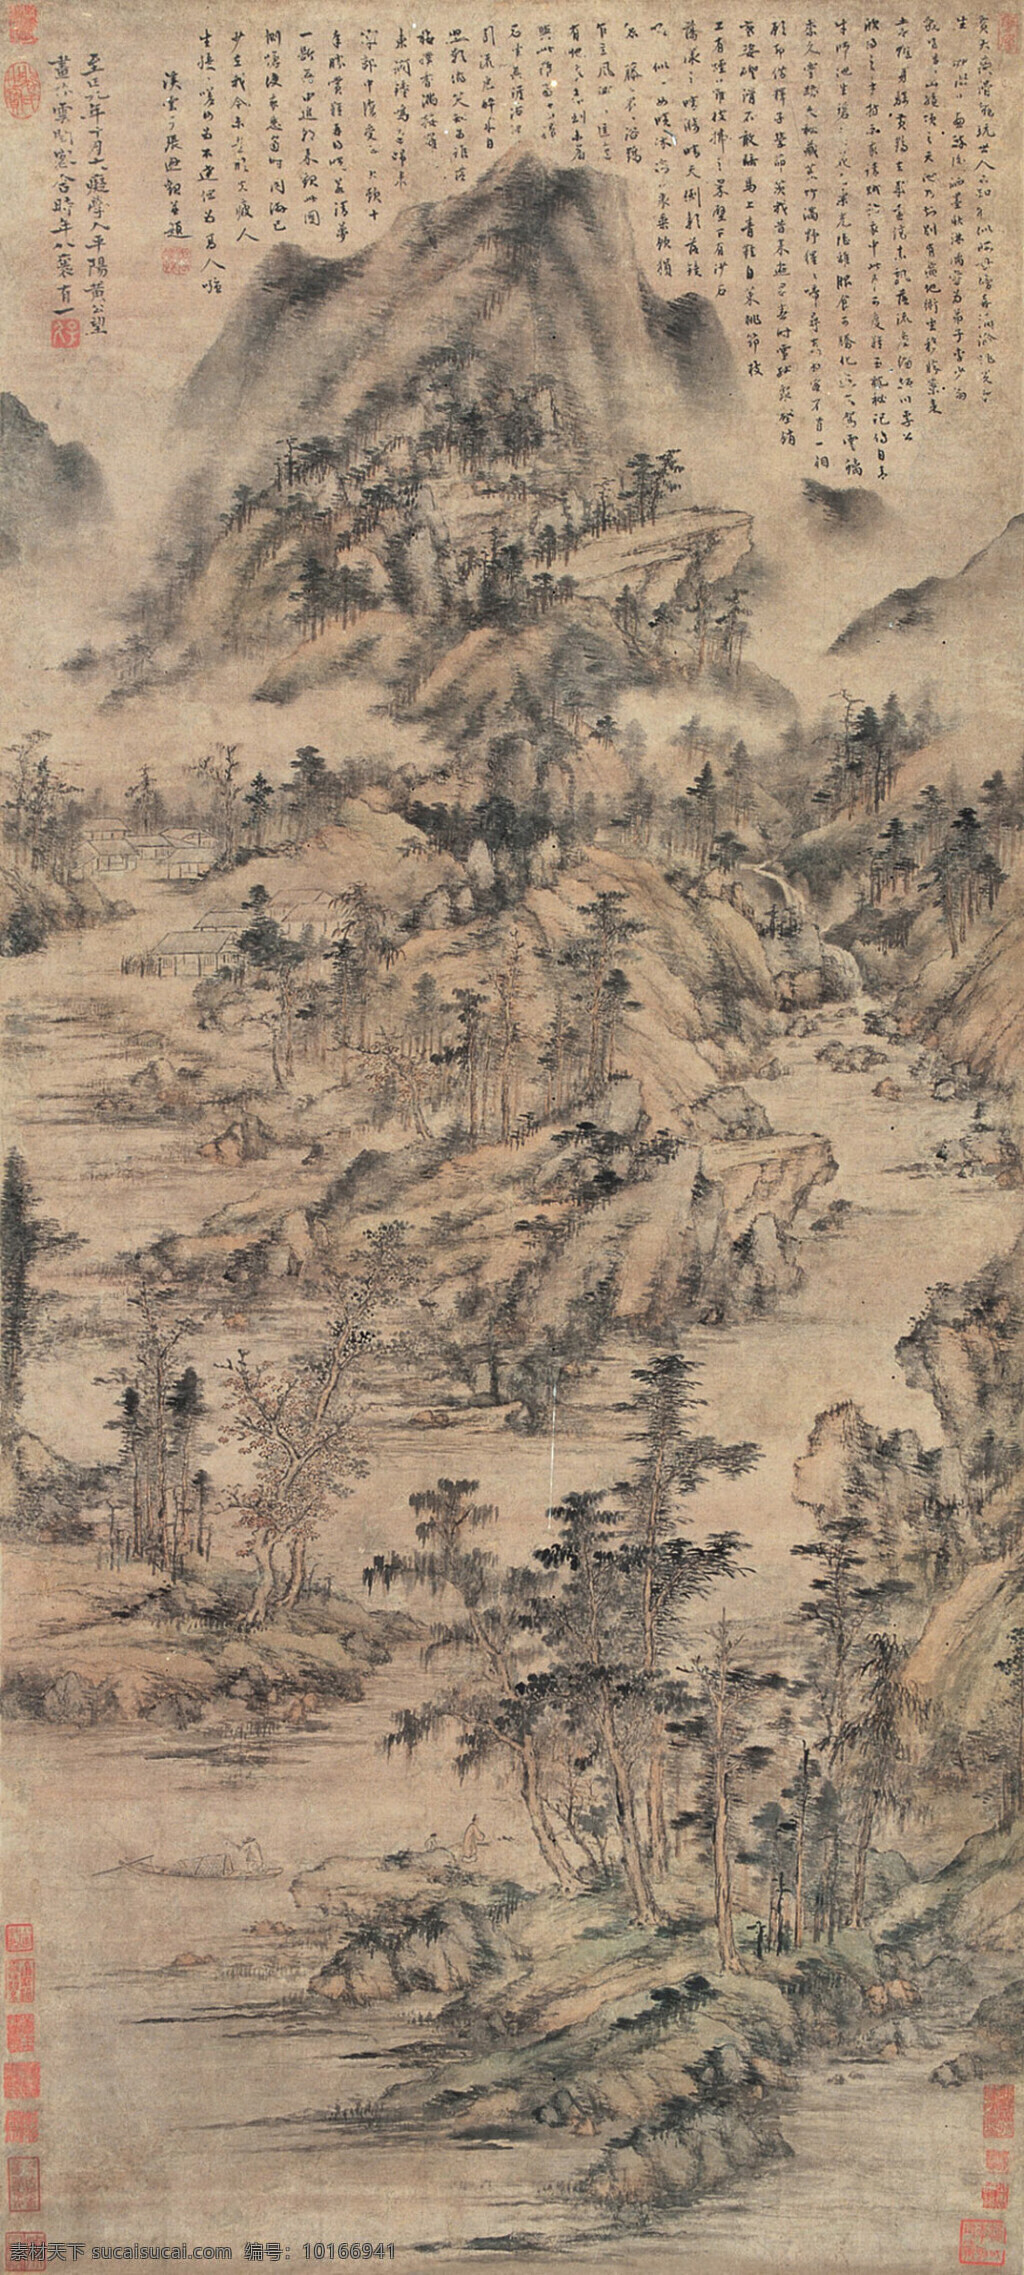 黄公望 山水 古代绘画 国画 传统山水 元代绘画 文化艺术 绘画书法